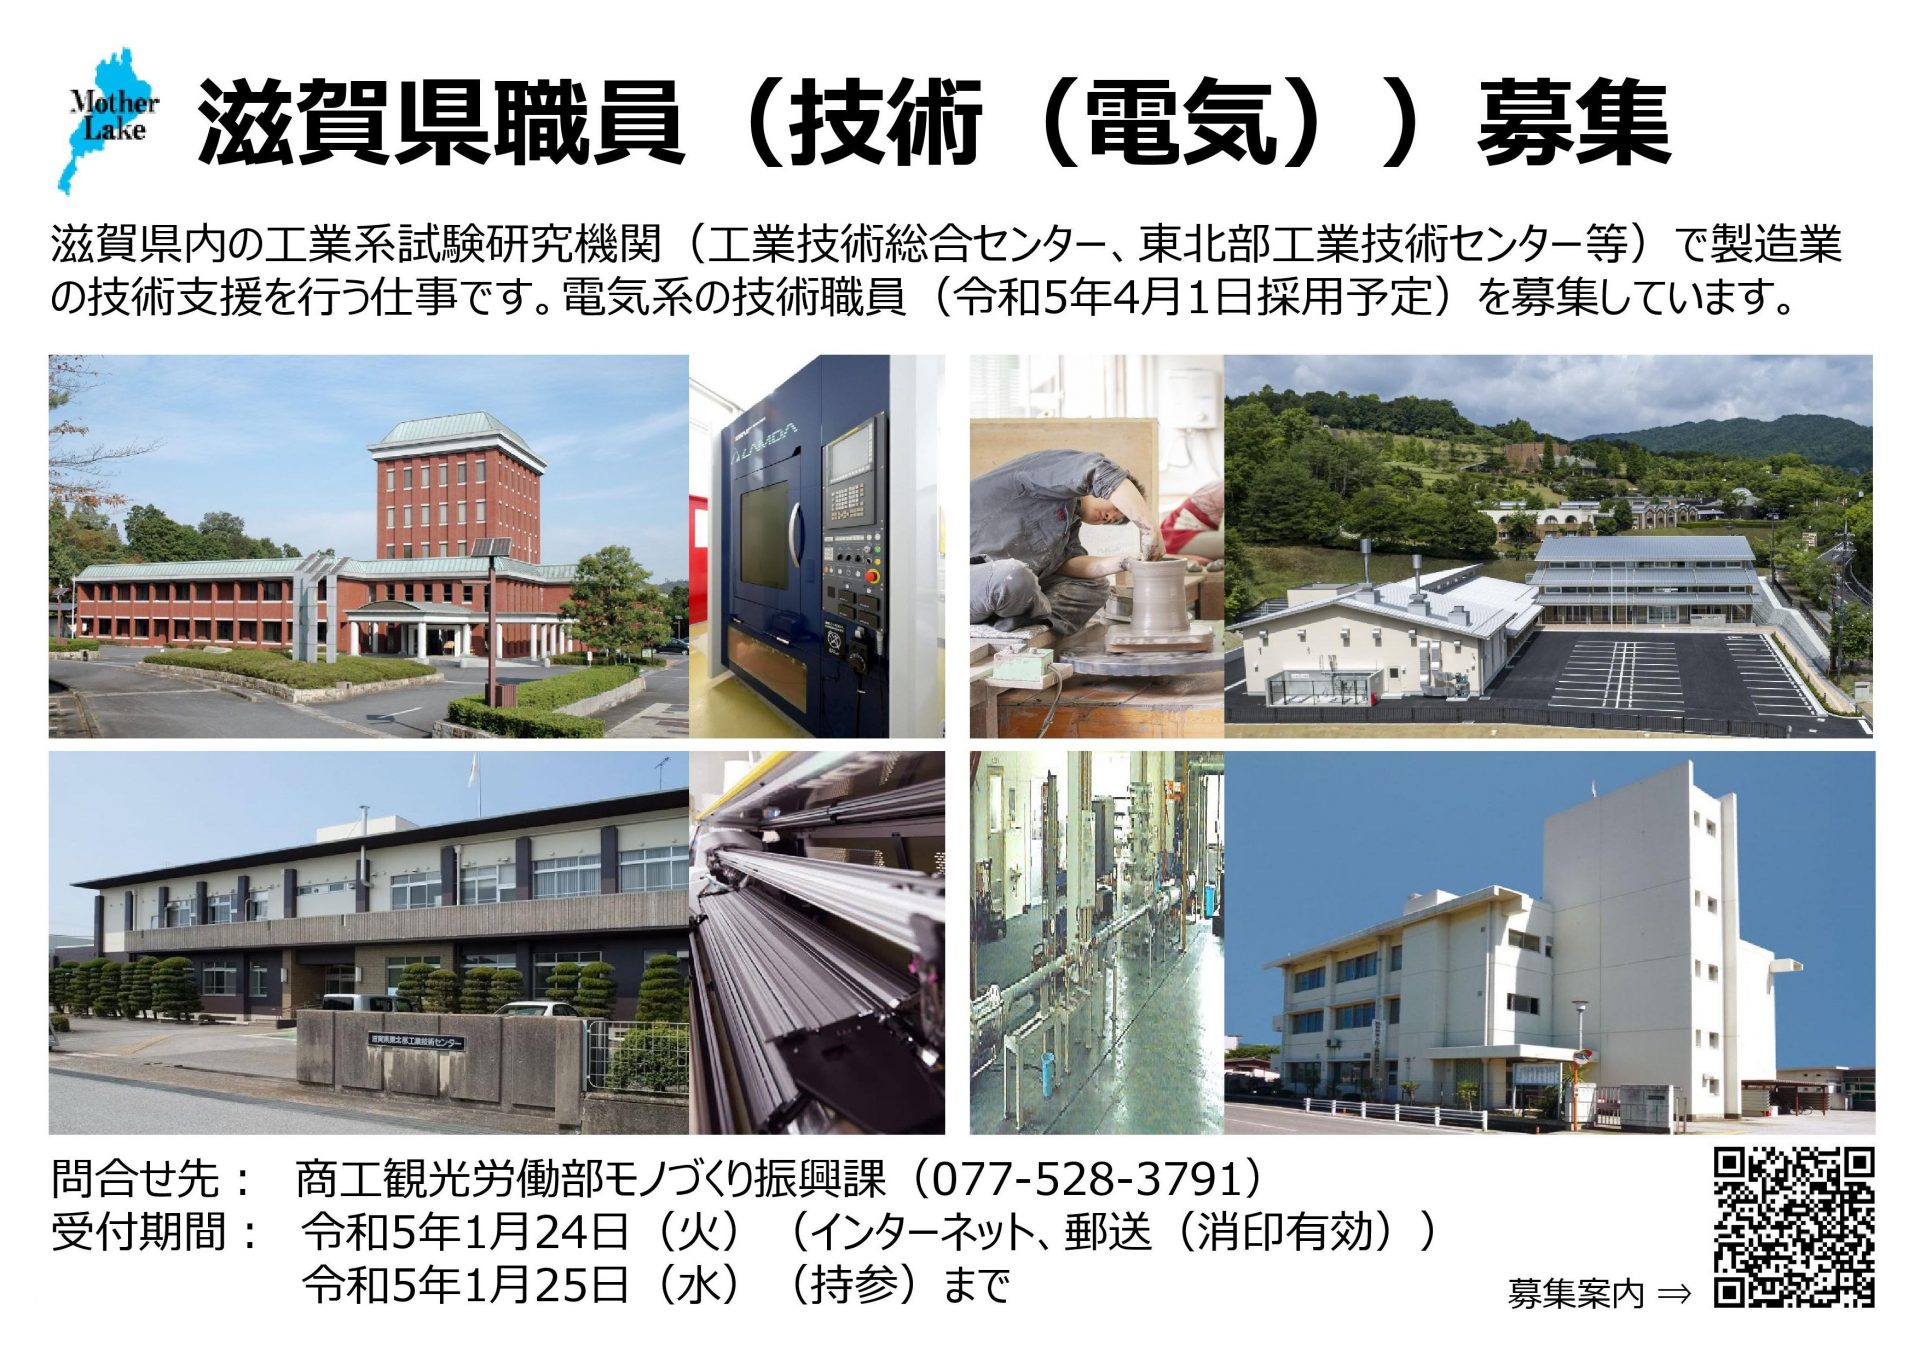 【採用情報】滋賀県職員（電気 ほか 計11職種）採用選考のご案内 | 地域のトピックス